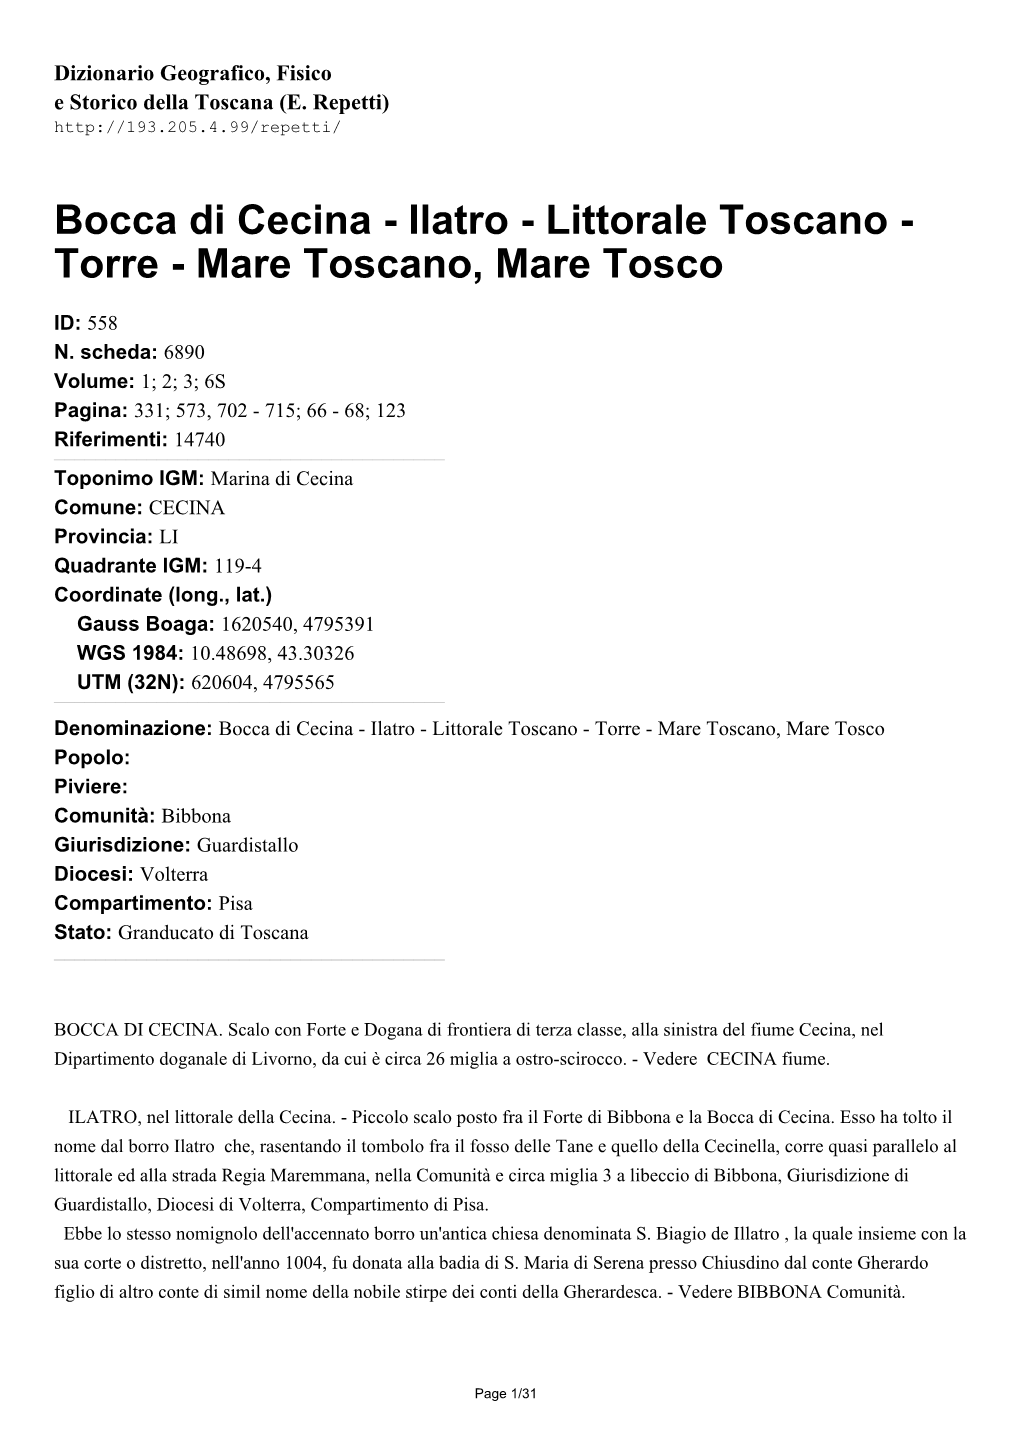 Bocca Di Cecina - Ilatro - Littorale Toscano - Torre - Mare Toscano, Mare Tosco